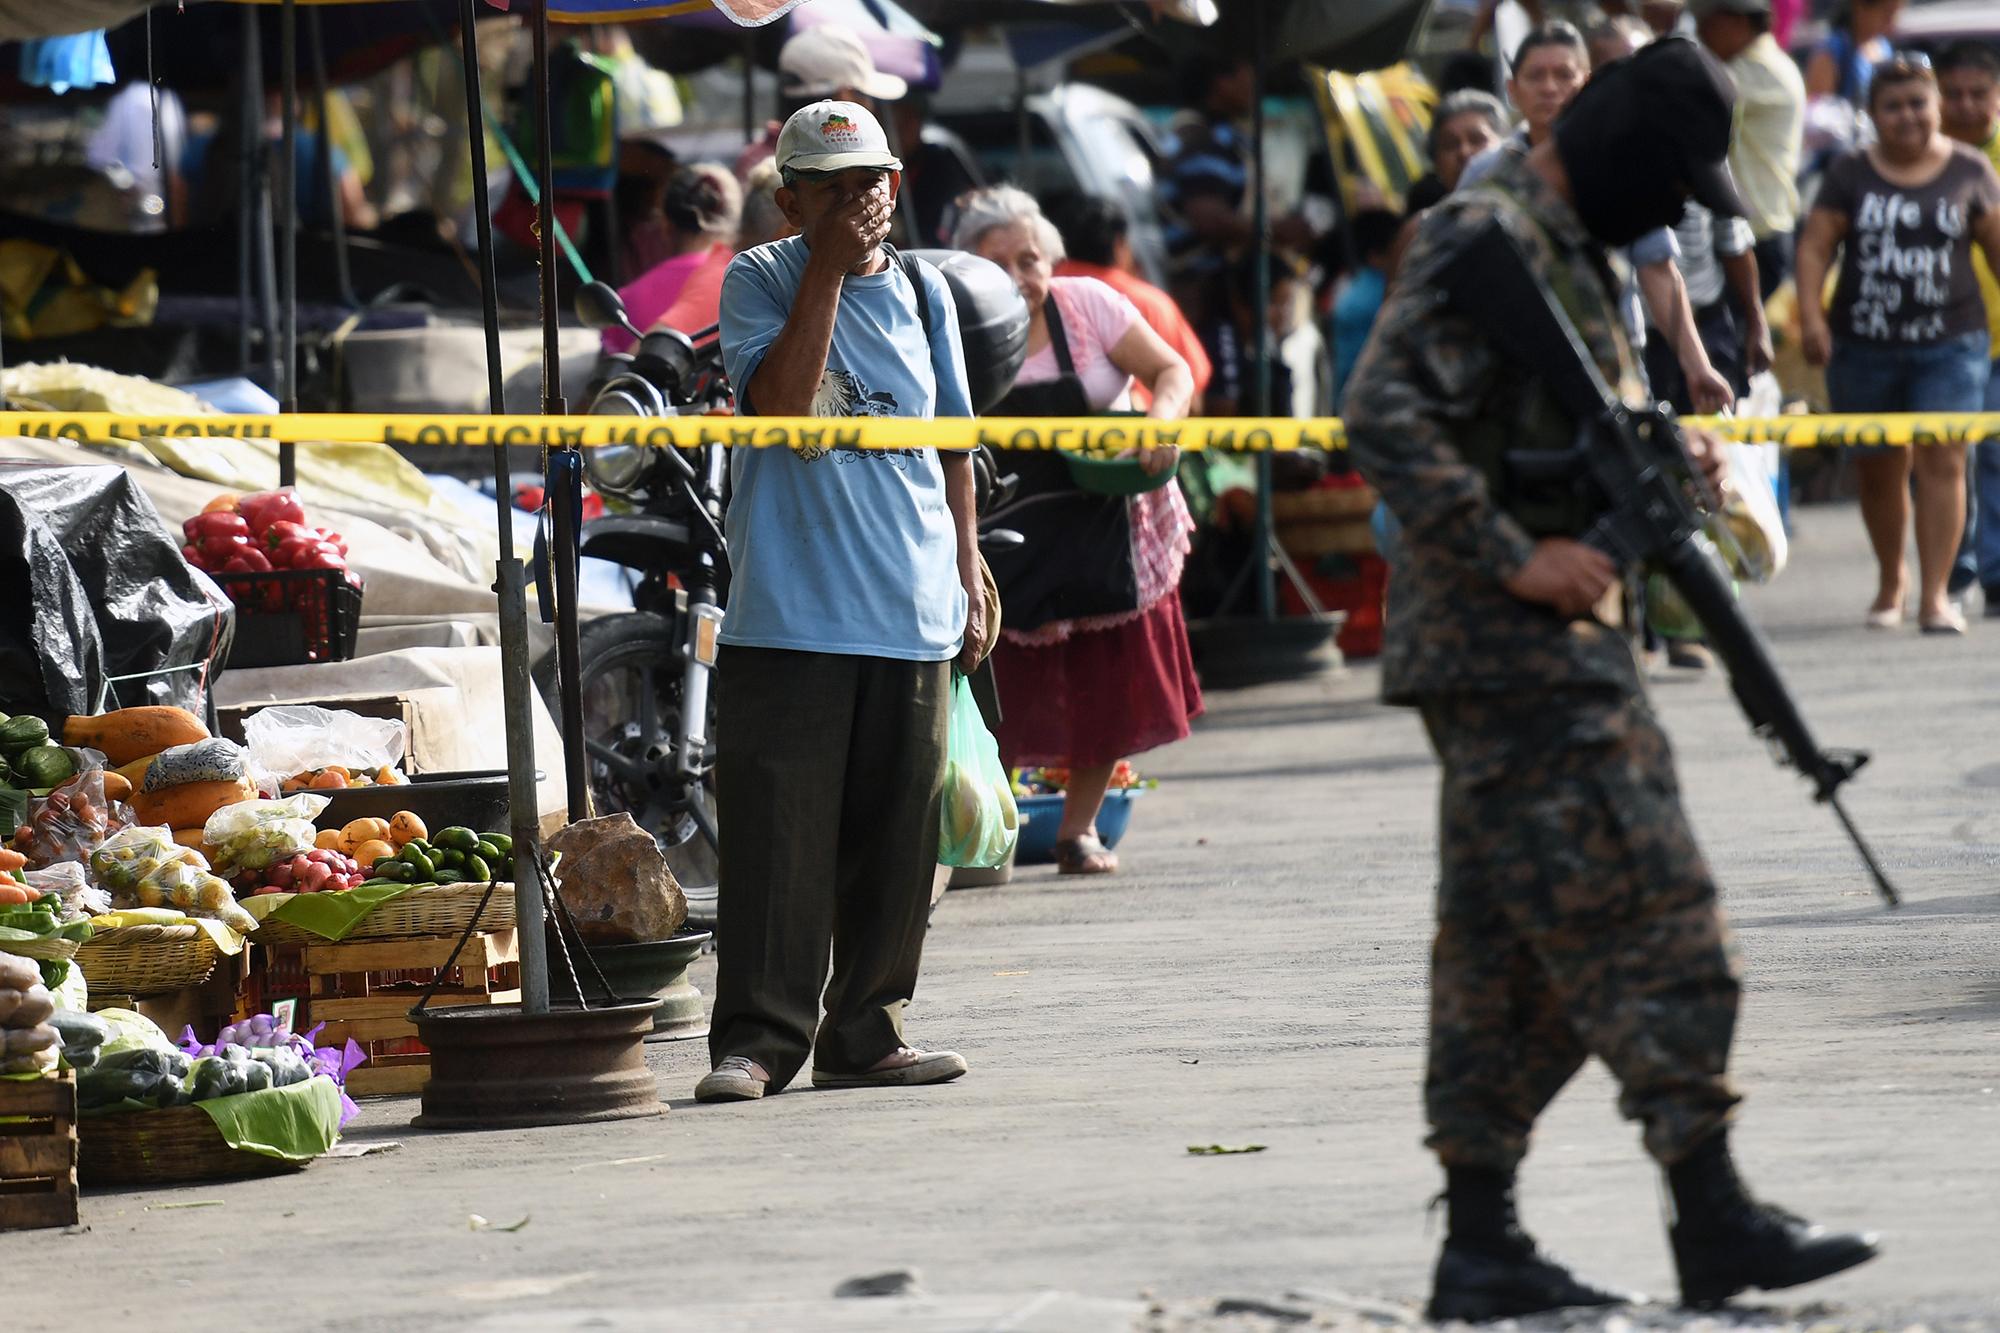 Un militar custodia la escena en la que yacen los cuerpos de cinco vendedores asesinados y un vigilante de seguridad, hecho ocurrido en el centro de San Salvador, el 15 de marzo de 2017.  / AFP PHOTO / Marvin RECINOS